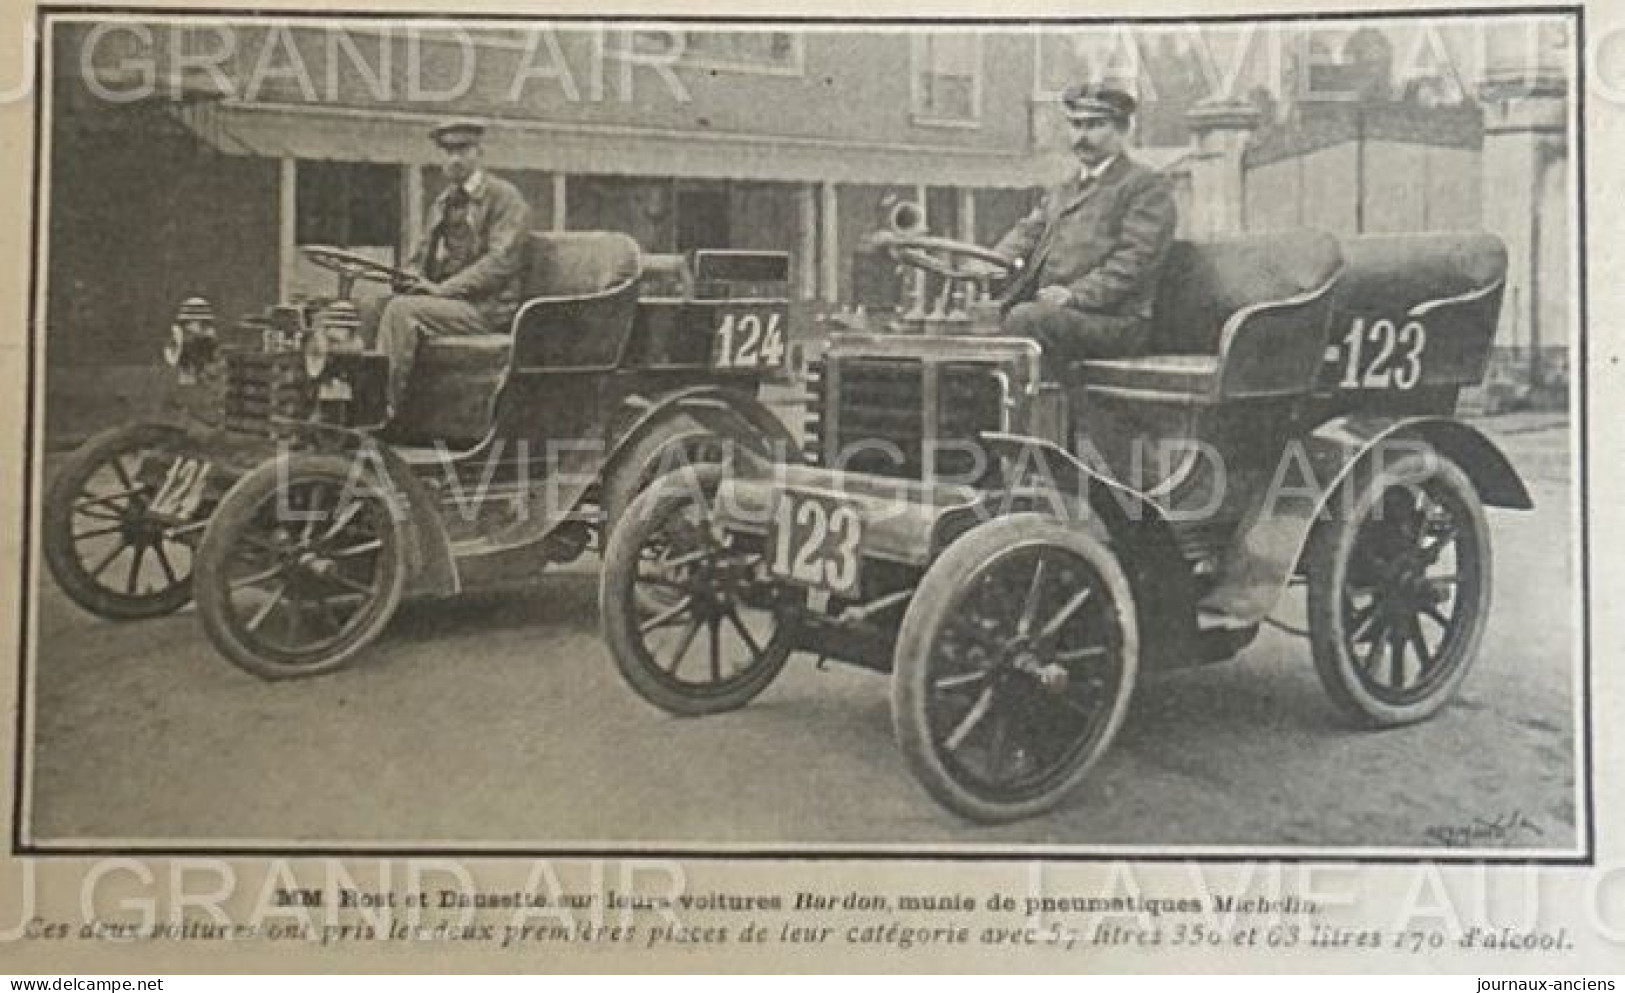 1902 COURSE AUTOMOBILE - LE CIRCUIT DU NORD - GEORGES RICHARD - PEUGEOT - ASTER - BARDON - GILLET FOREST - MERCY ETC....